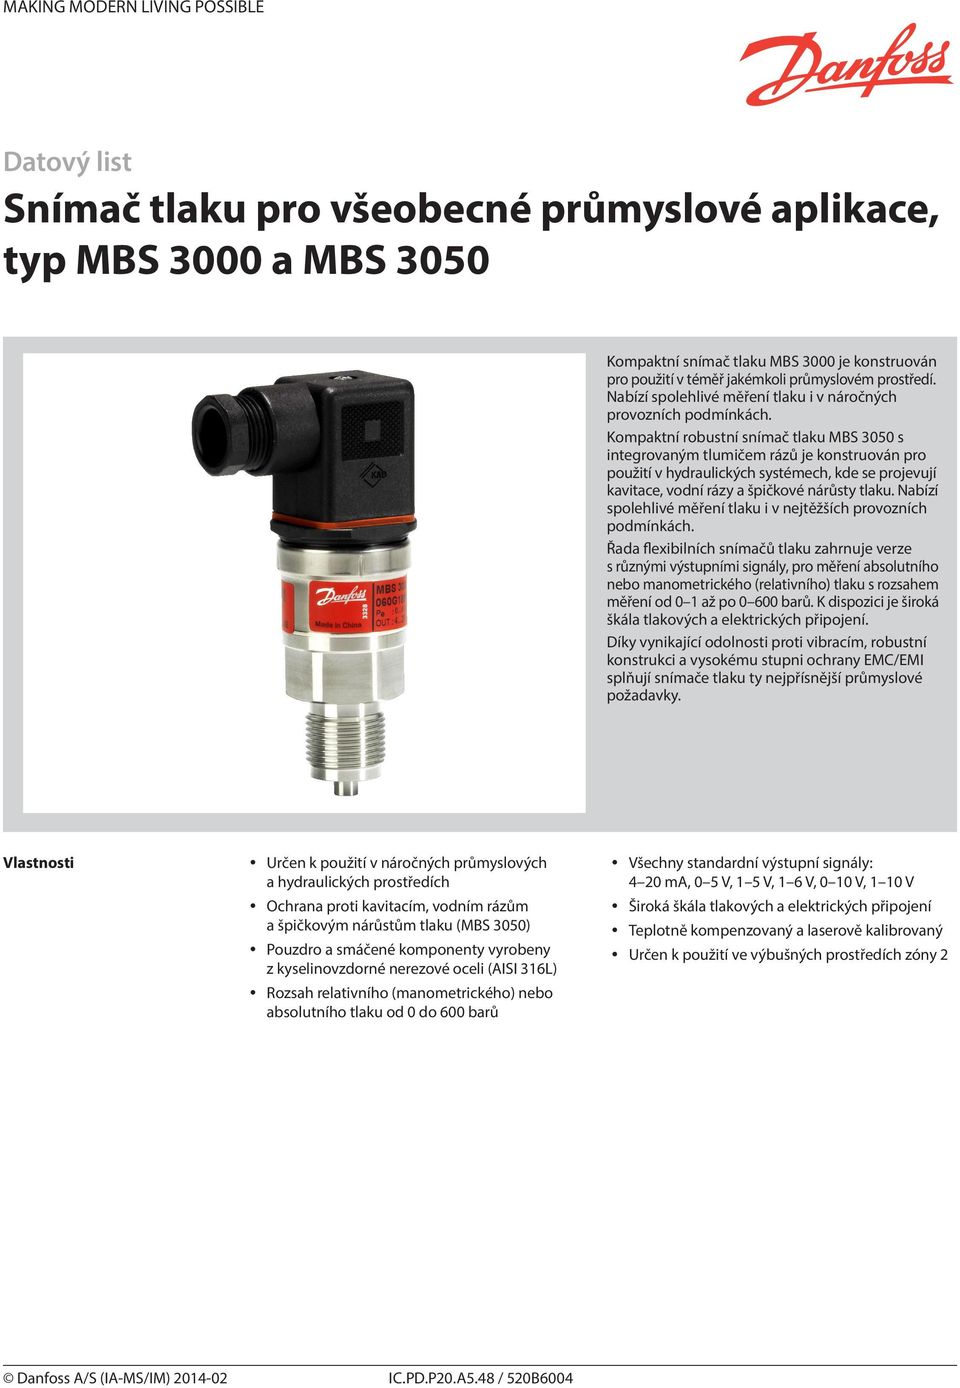 Kompaktní robustní snímač tlaku MBS 3050 s integrovaným tlumičem rázů je konstruován pro použití v hydraulických systémech, kde se projevují kavitace, vodní rázy a špičkové nárůsty tlaku.